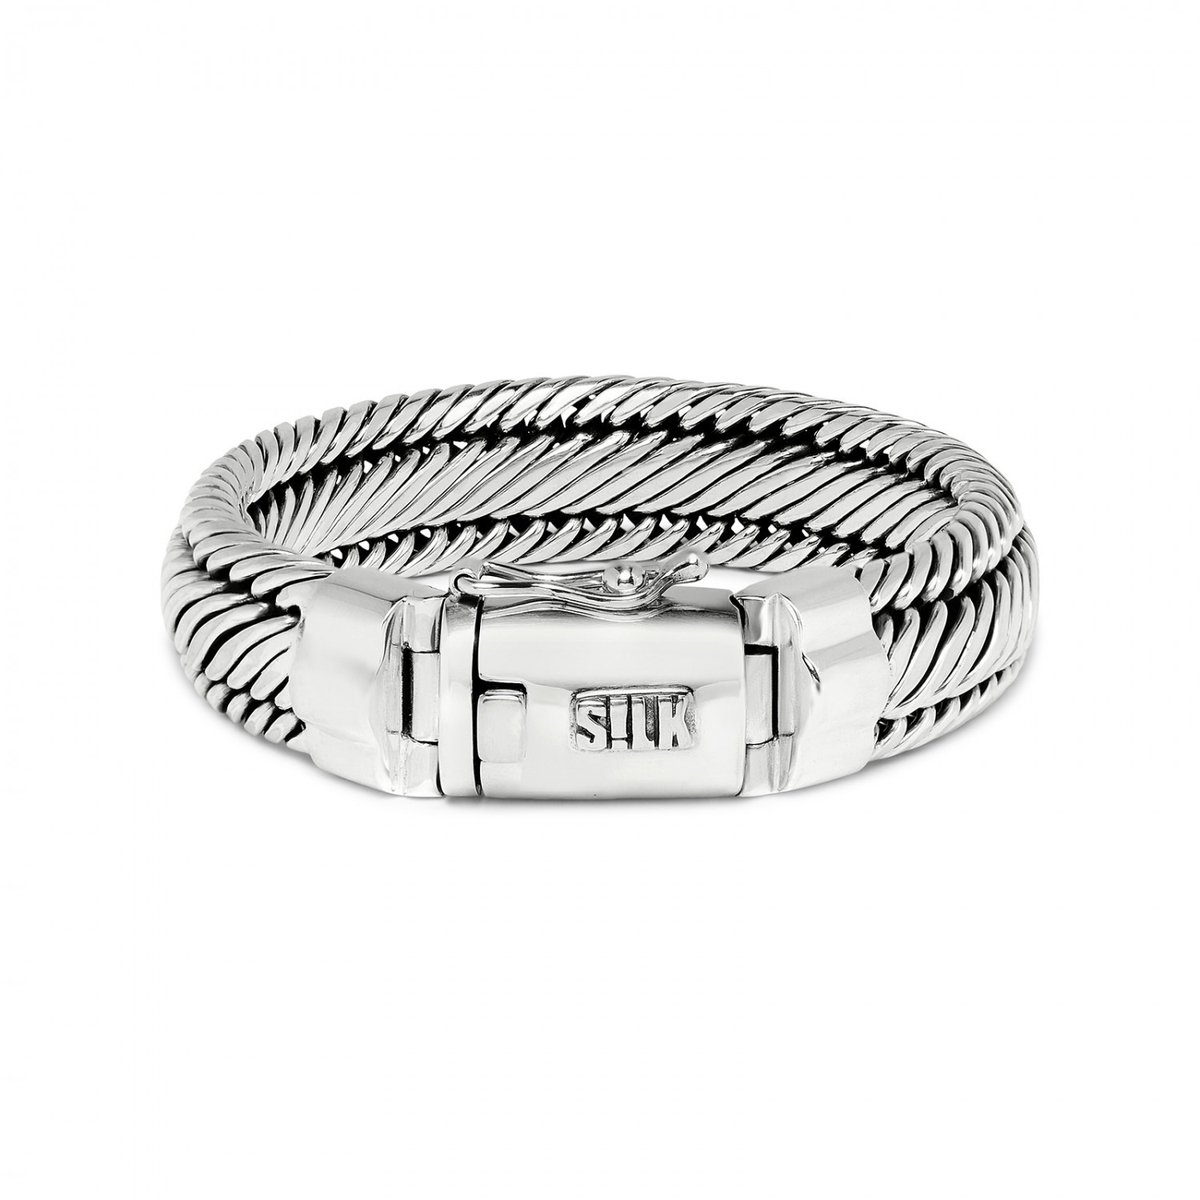 SILK Jewellery - Zilveren Armband - Weave - 733.21 - Maat 21,0